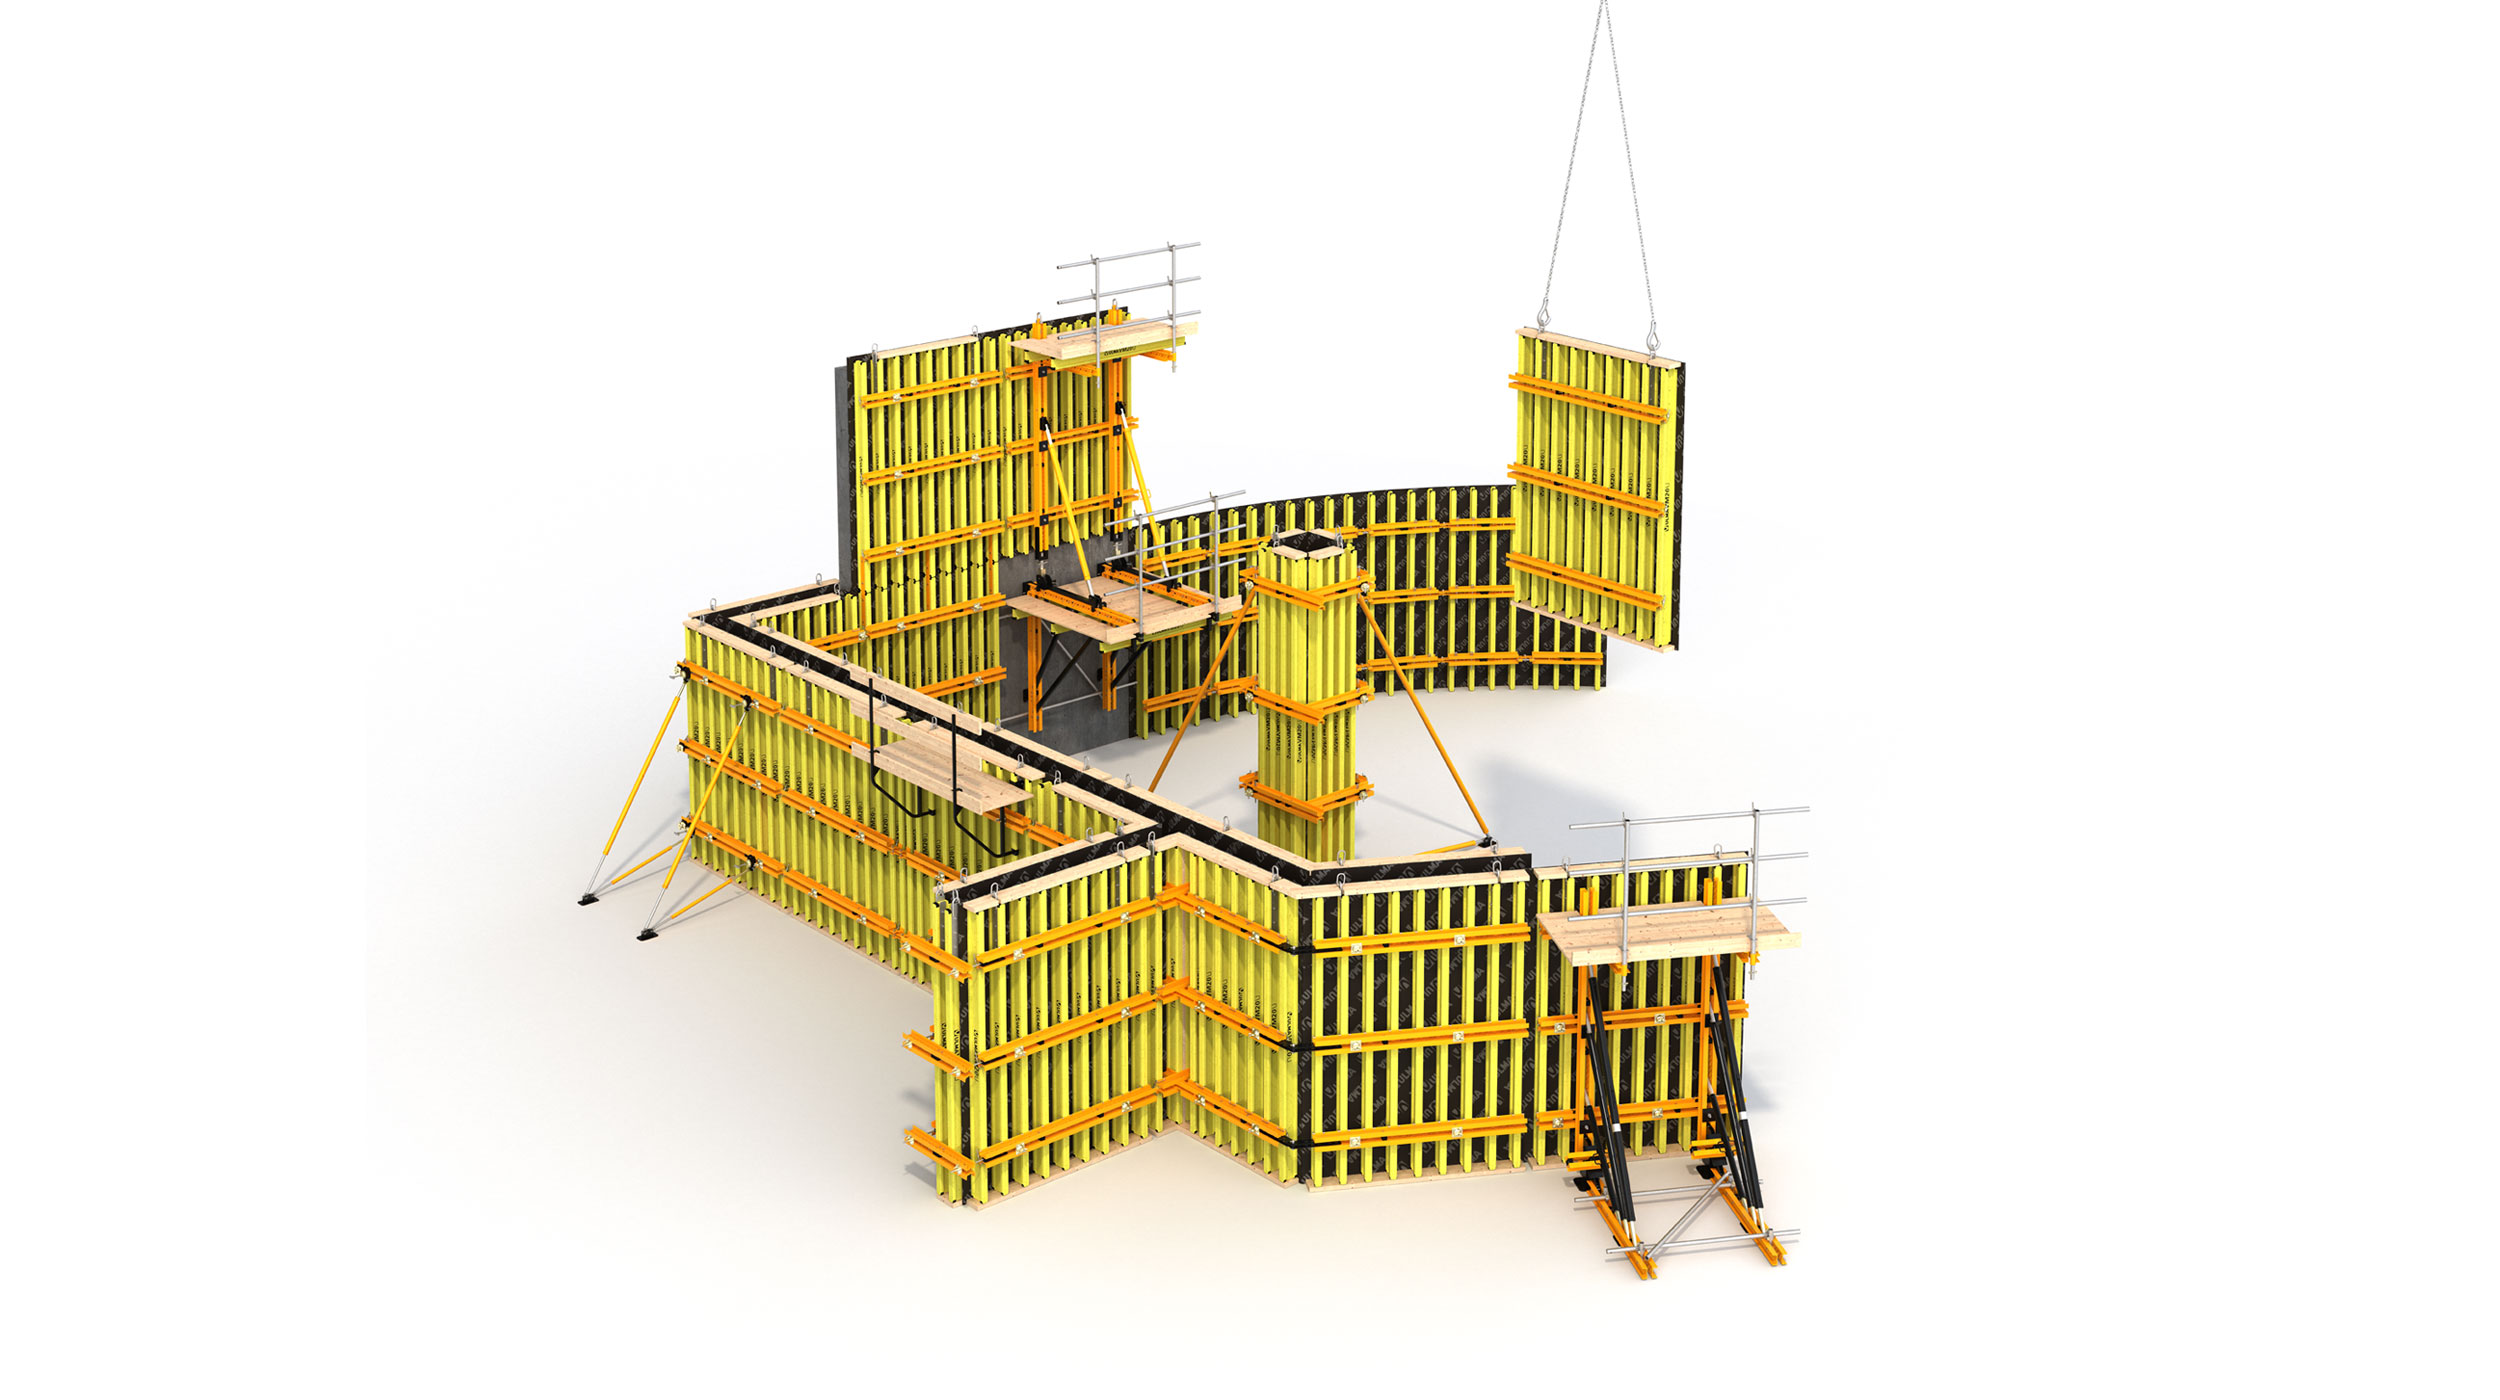 Sistema de encofrado de vigas flexible y versátil, para edificación y obra civil. Sistema eficiente con excelentes acabados de hormigón.